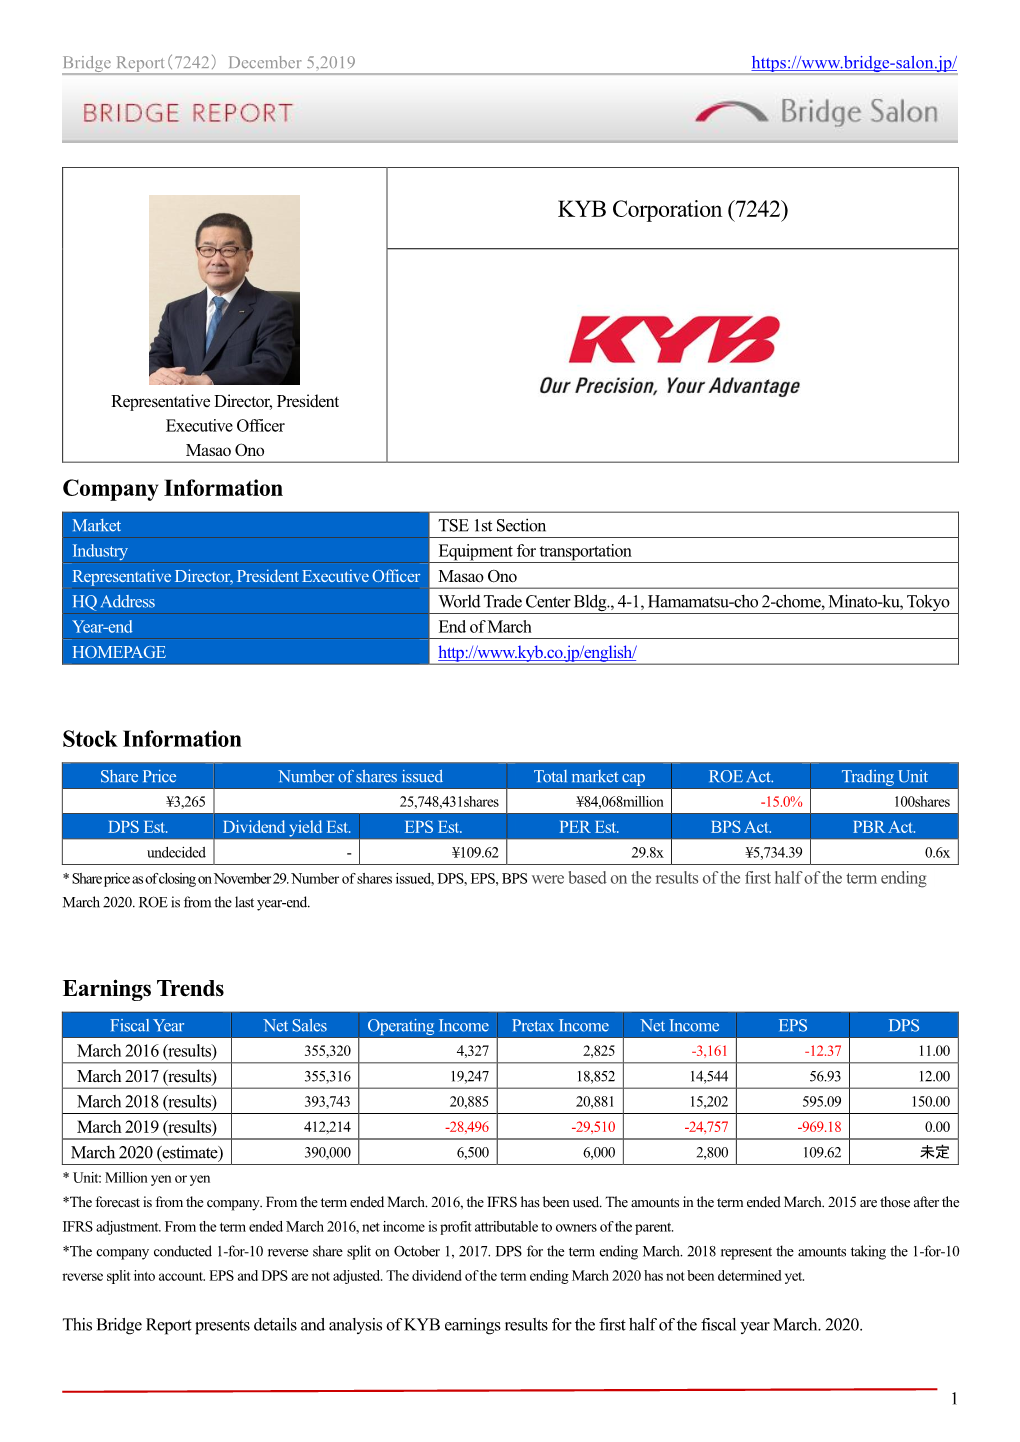 KYB Corporation (7242) Company Information